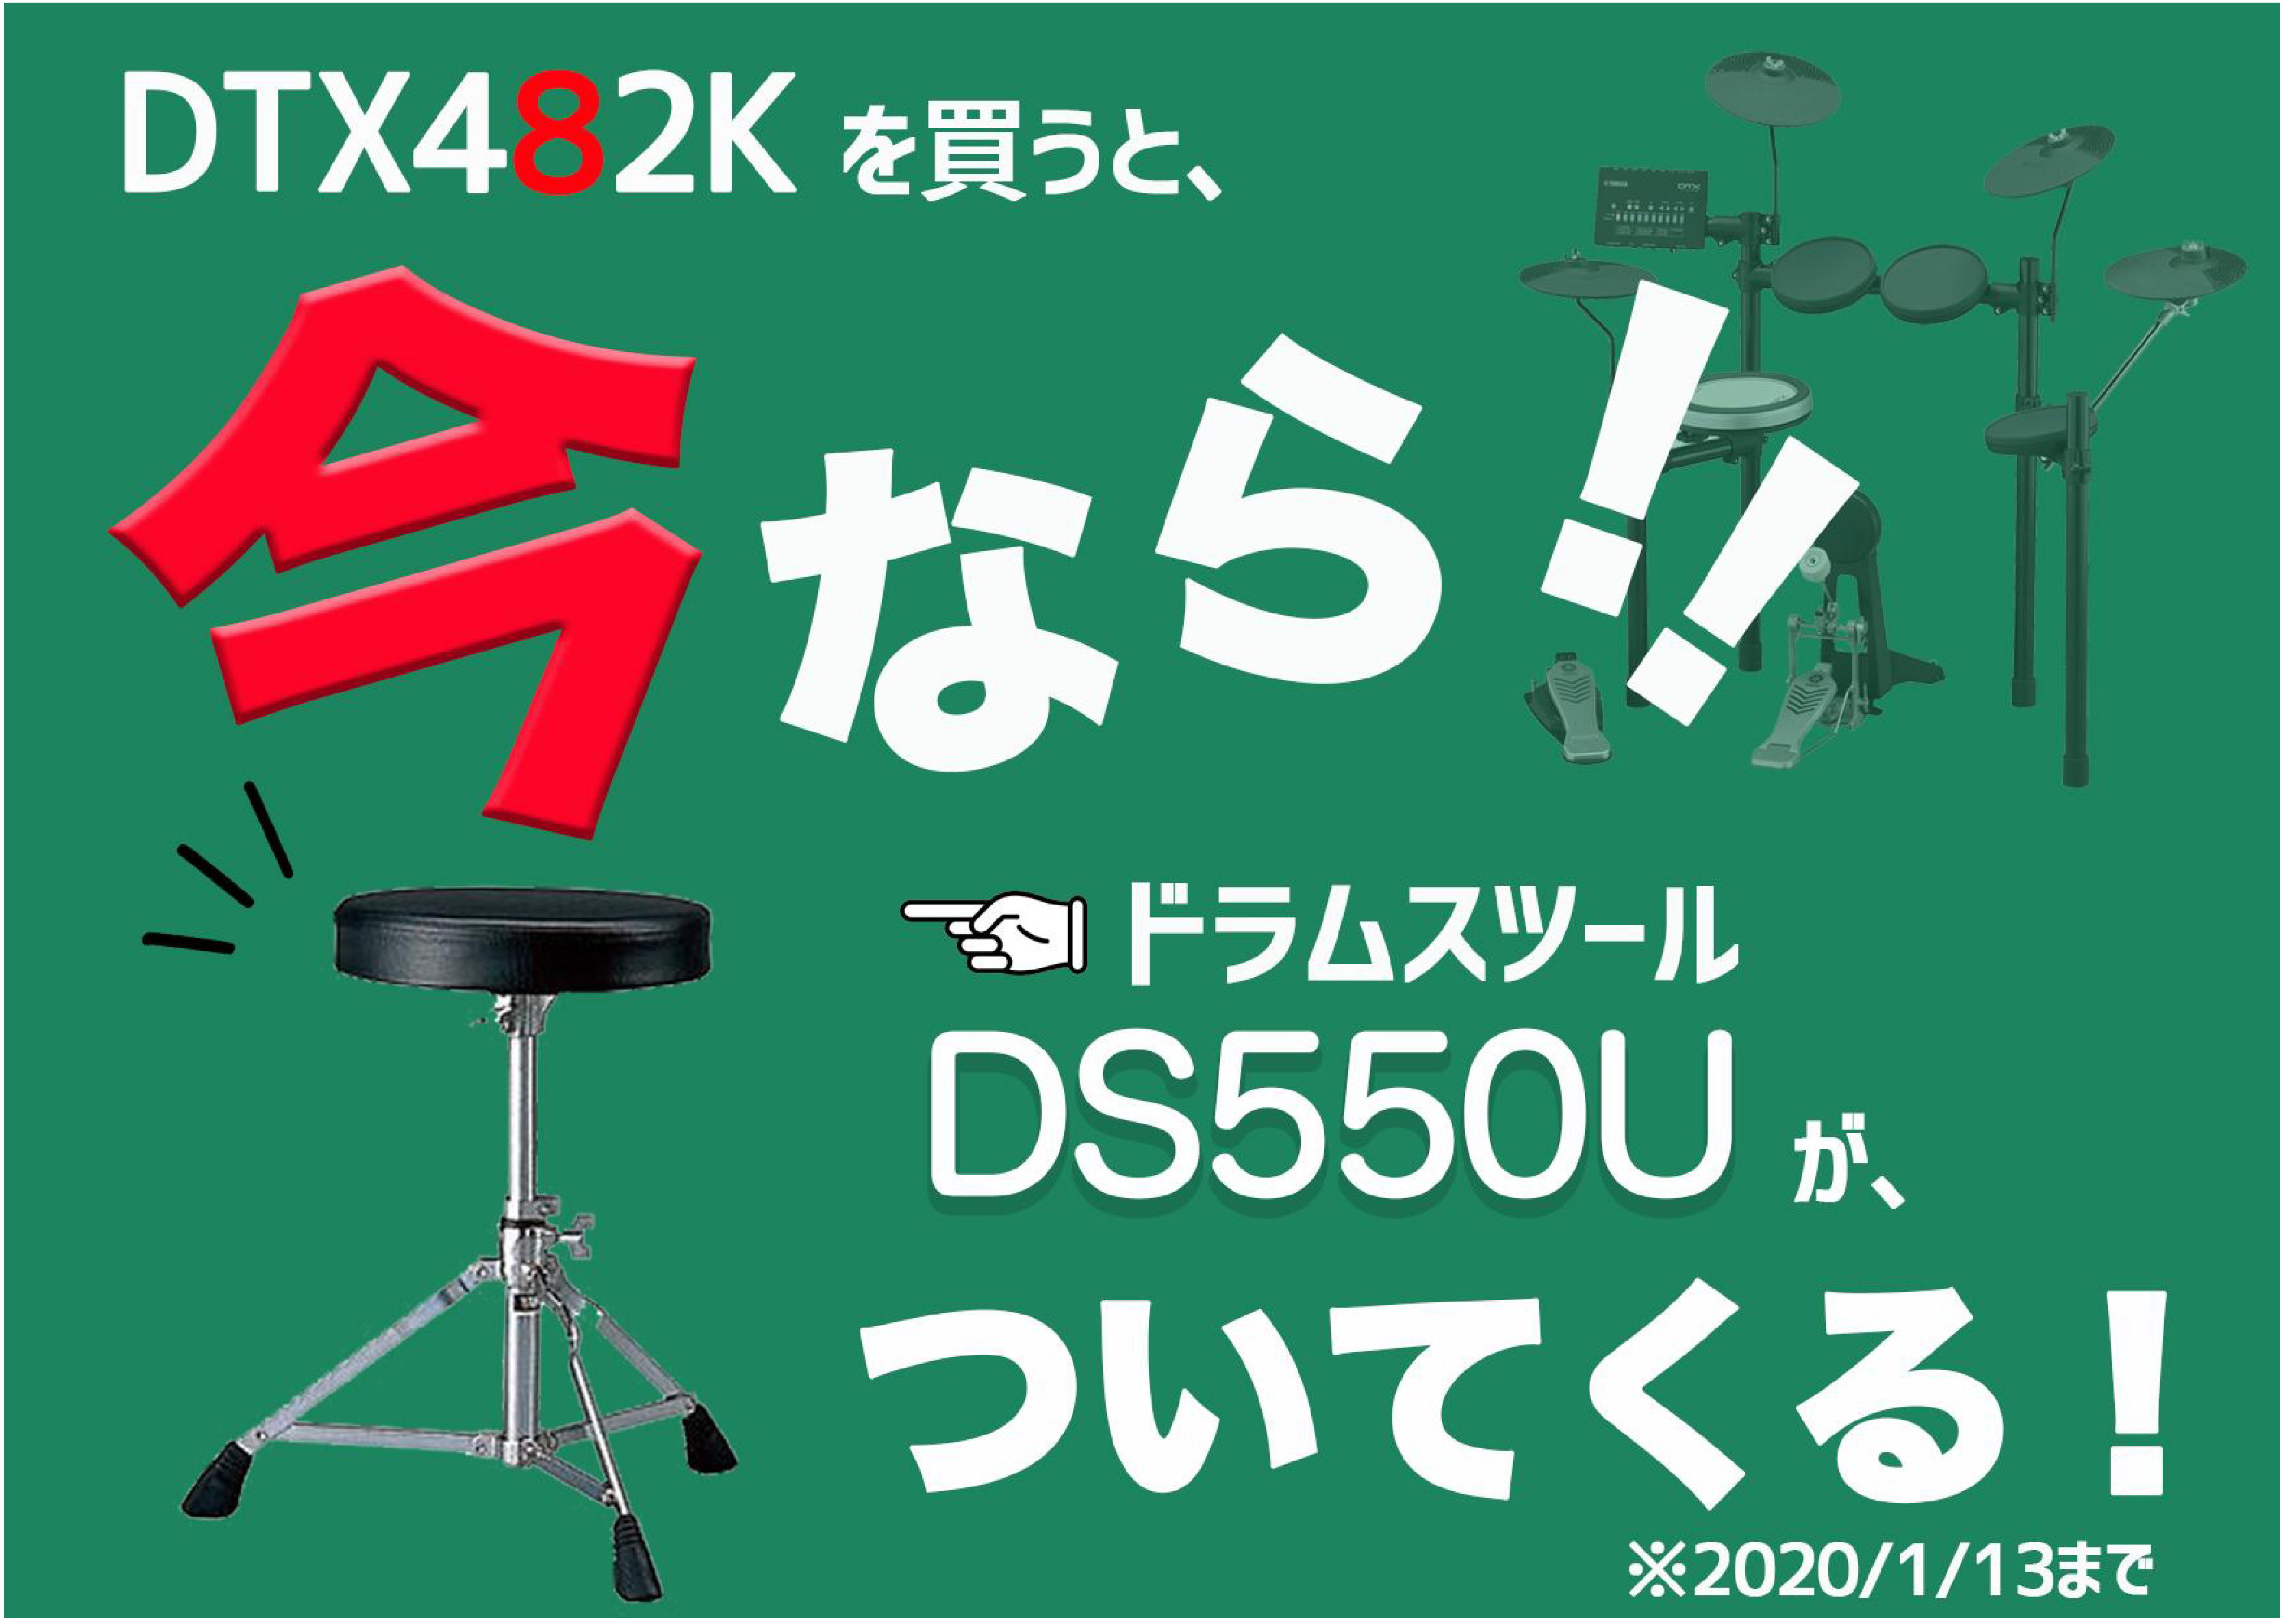 **DTX482Kを買って、ドラムイスがもらえる!? 年末に近づき、肌寒い季節がやって来ました。新潟県長岡市は最近は雨が多く、「そろそろ雪かぁ」と思う今日この頃です。そこで今回は少しでもホットになる情報をお知らせ致します。なんと、電子ドラム人気機種「DTX482K」を購入するとドラムイスがプレゼント […]